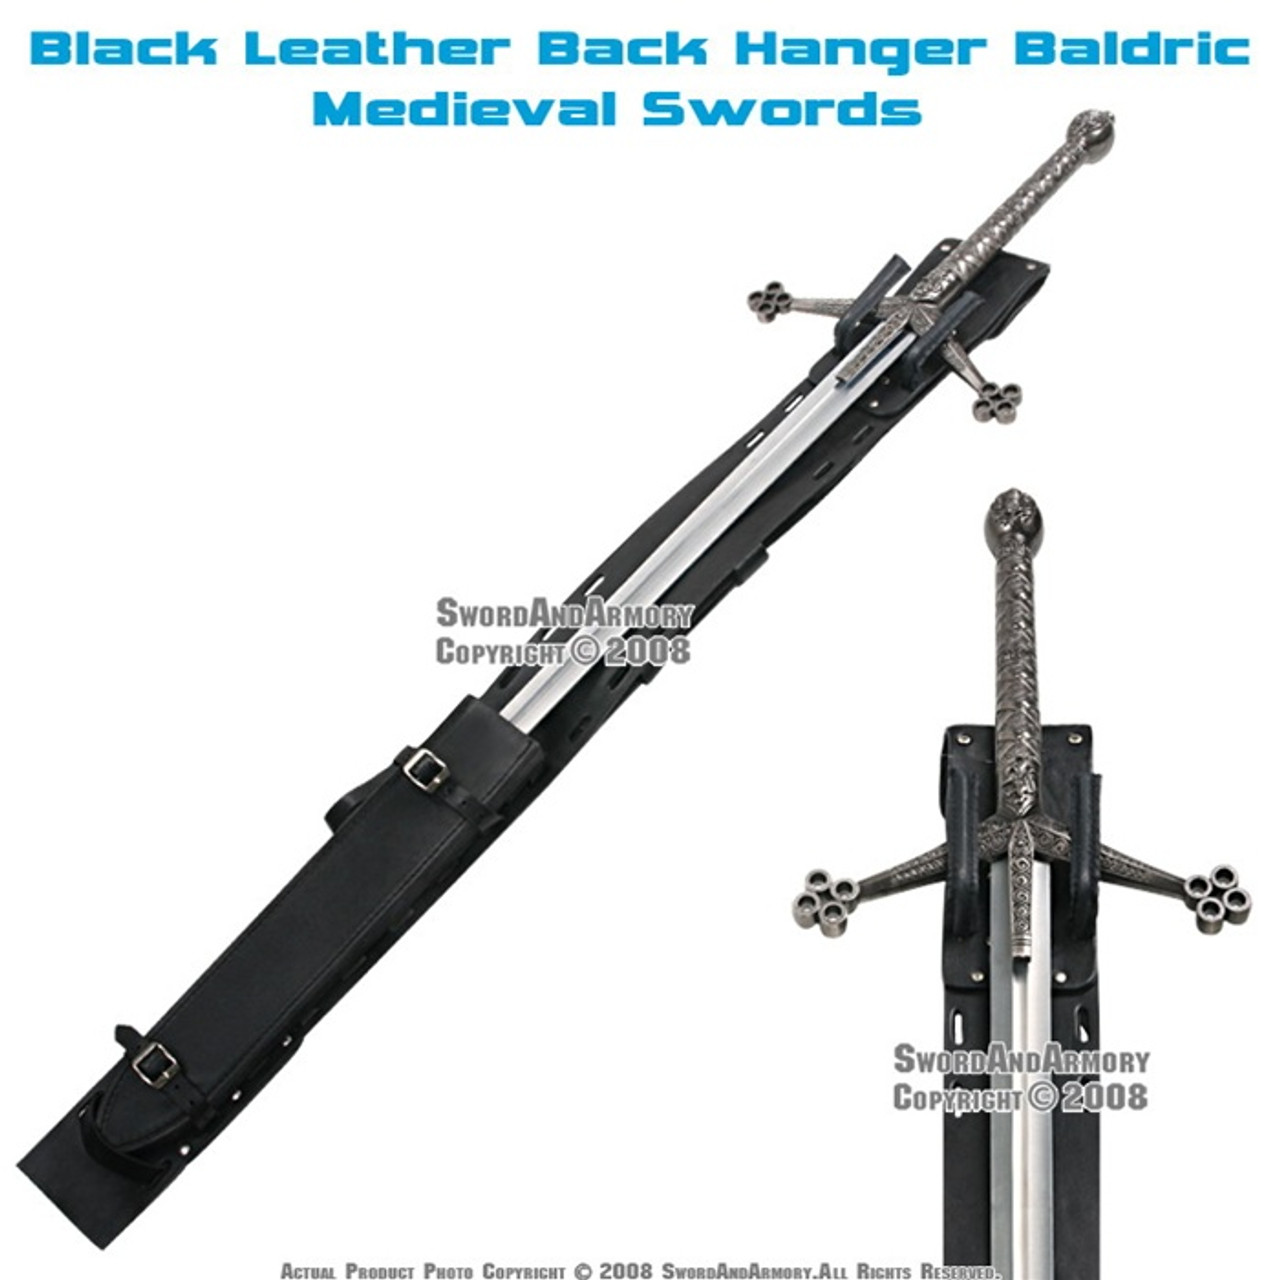 Leather Back Hanger Baldric for Long Medieval Swords